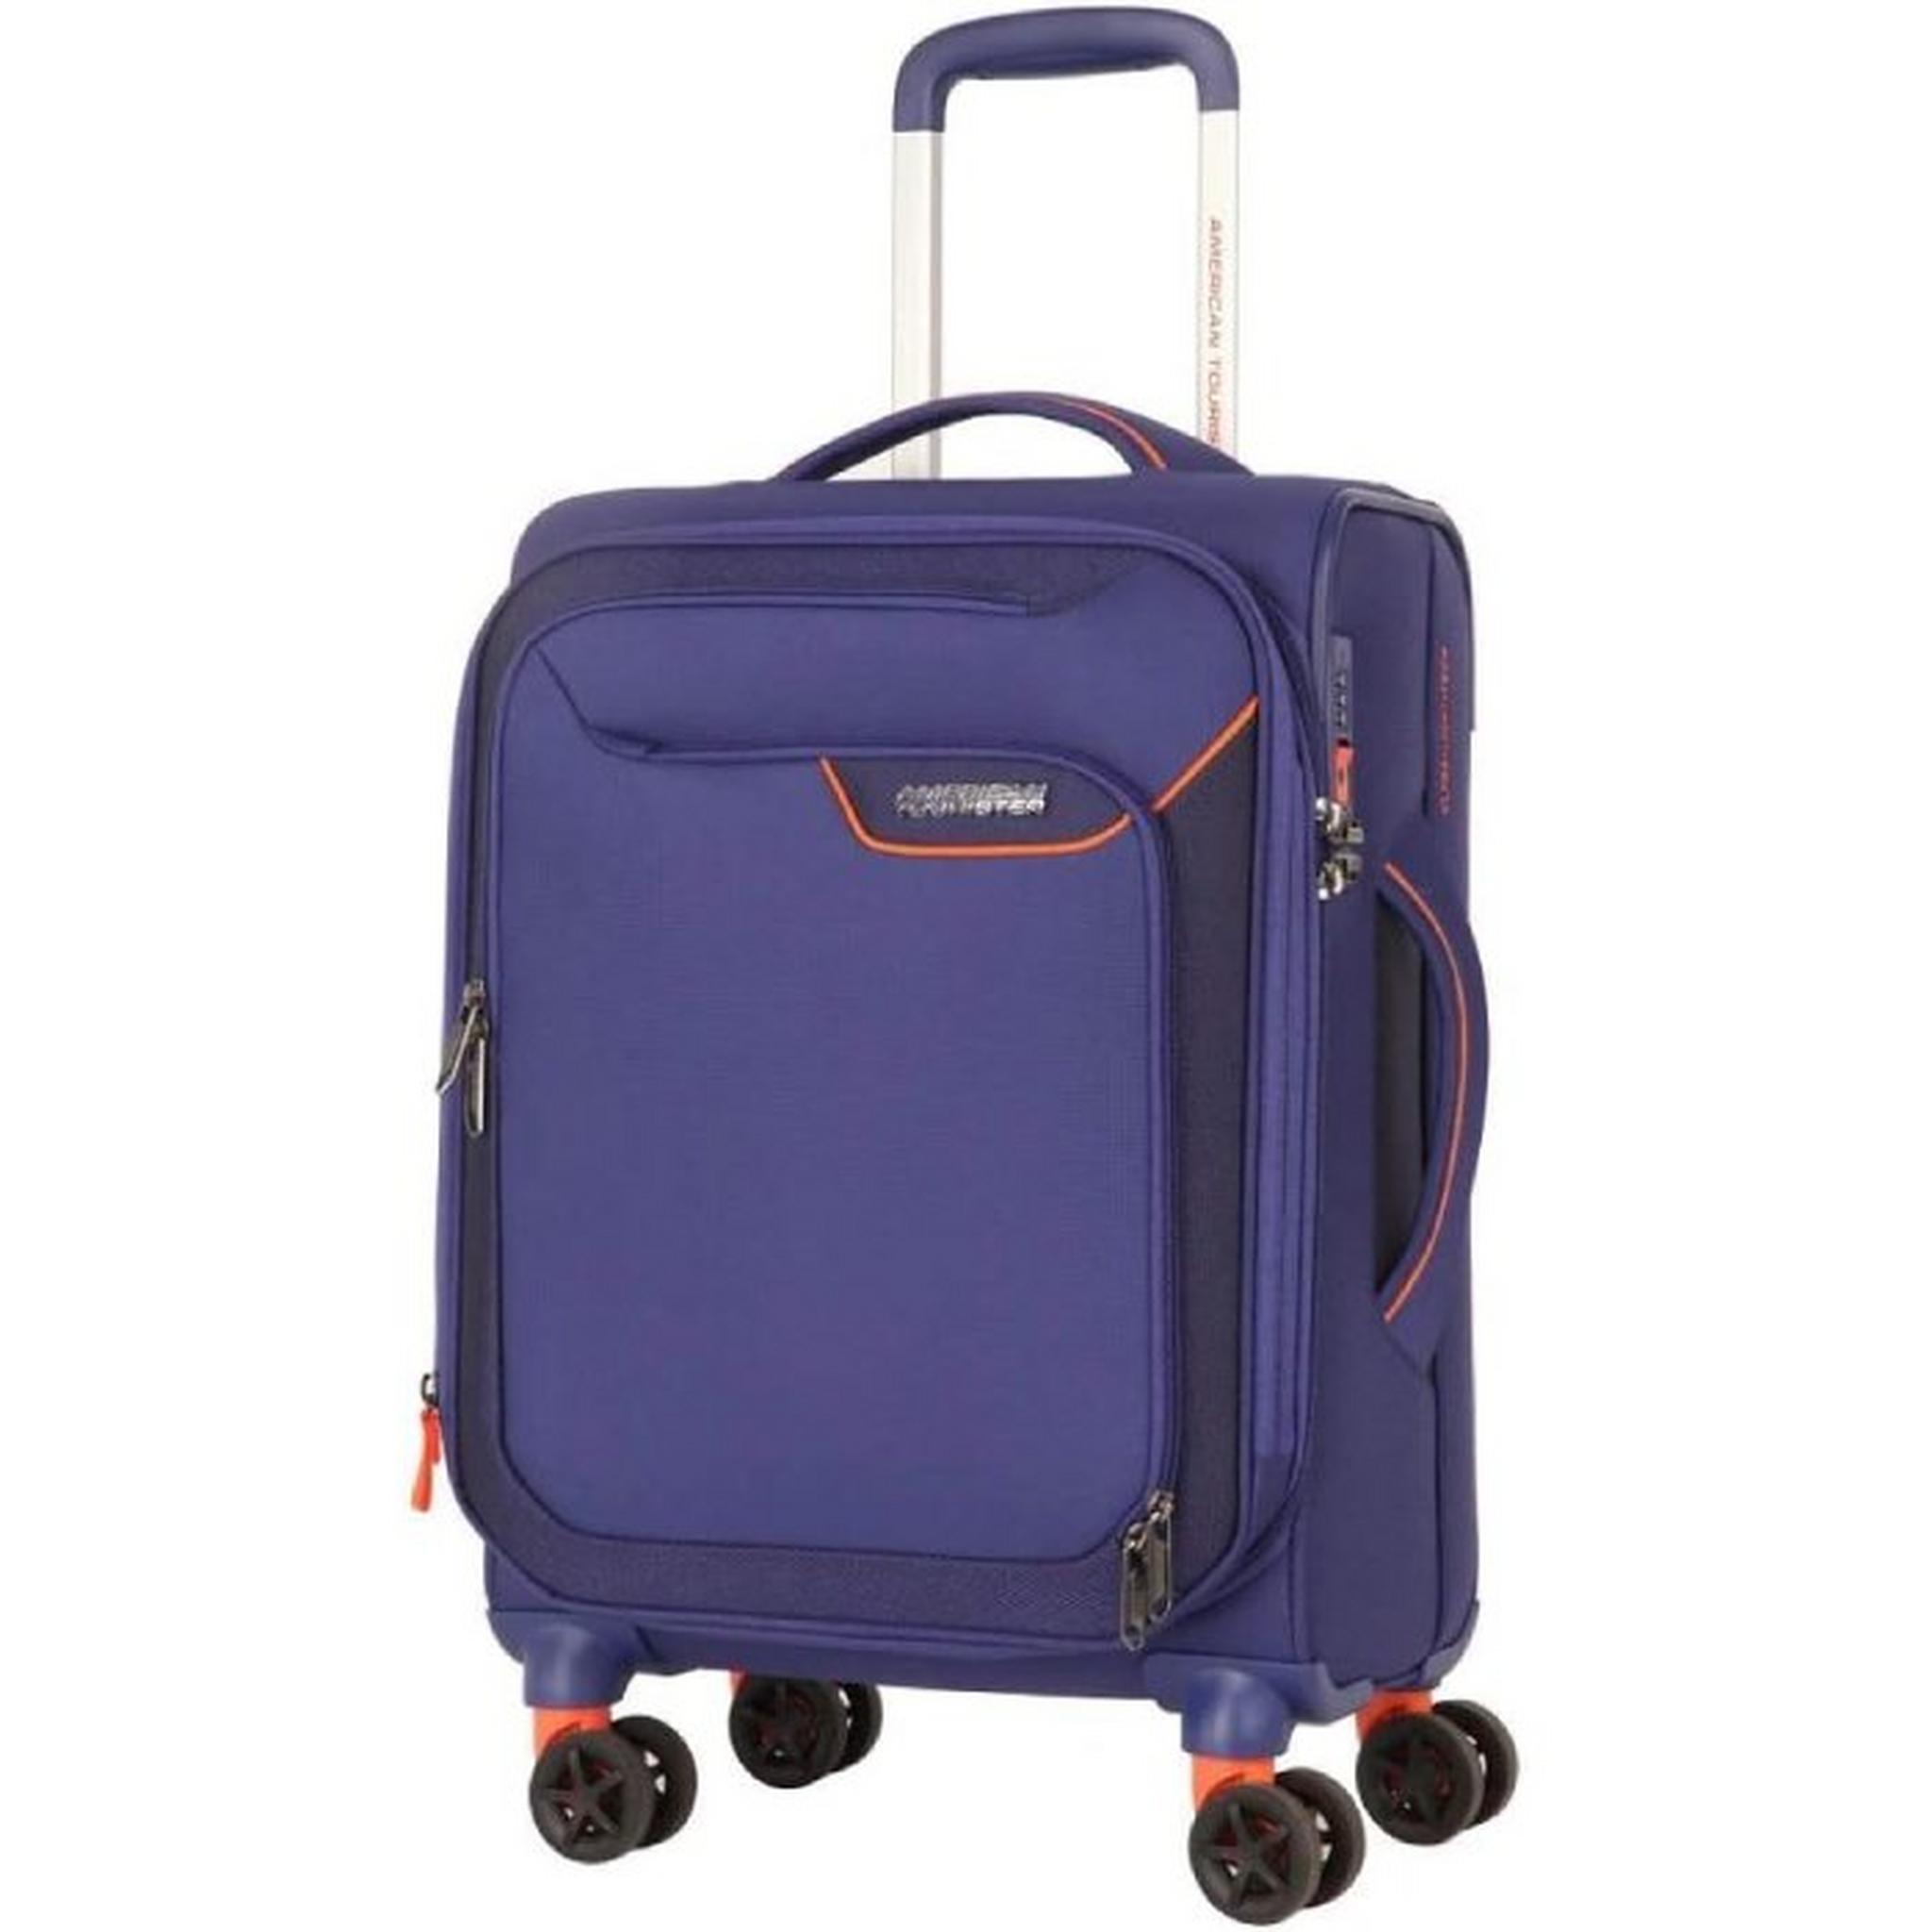 حقيبة سفر ابلايت بجوانب ناعمة من أمريكان توريستر، مقاس 55 سم، DB7X61010– أزرق